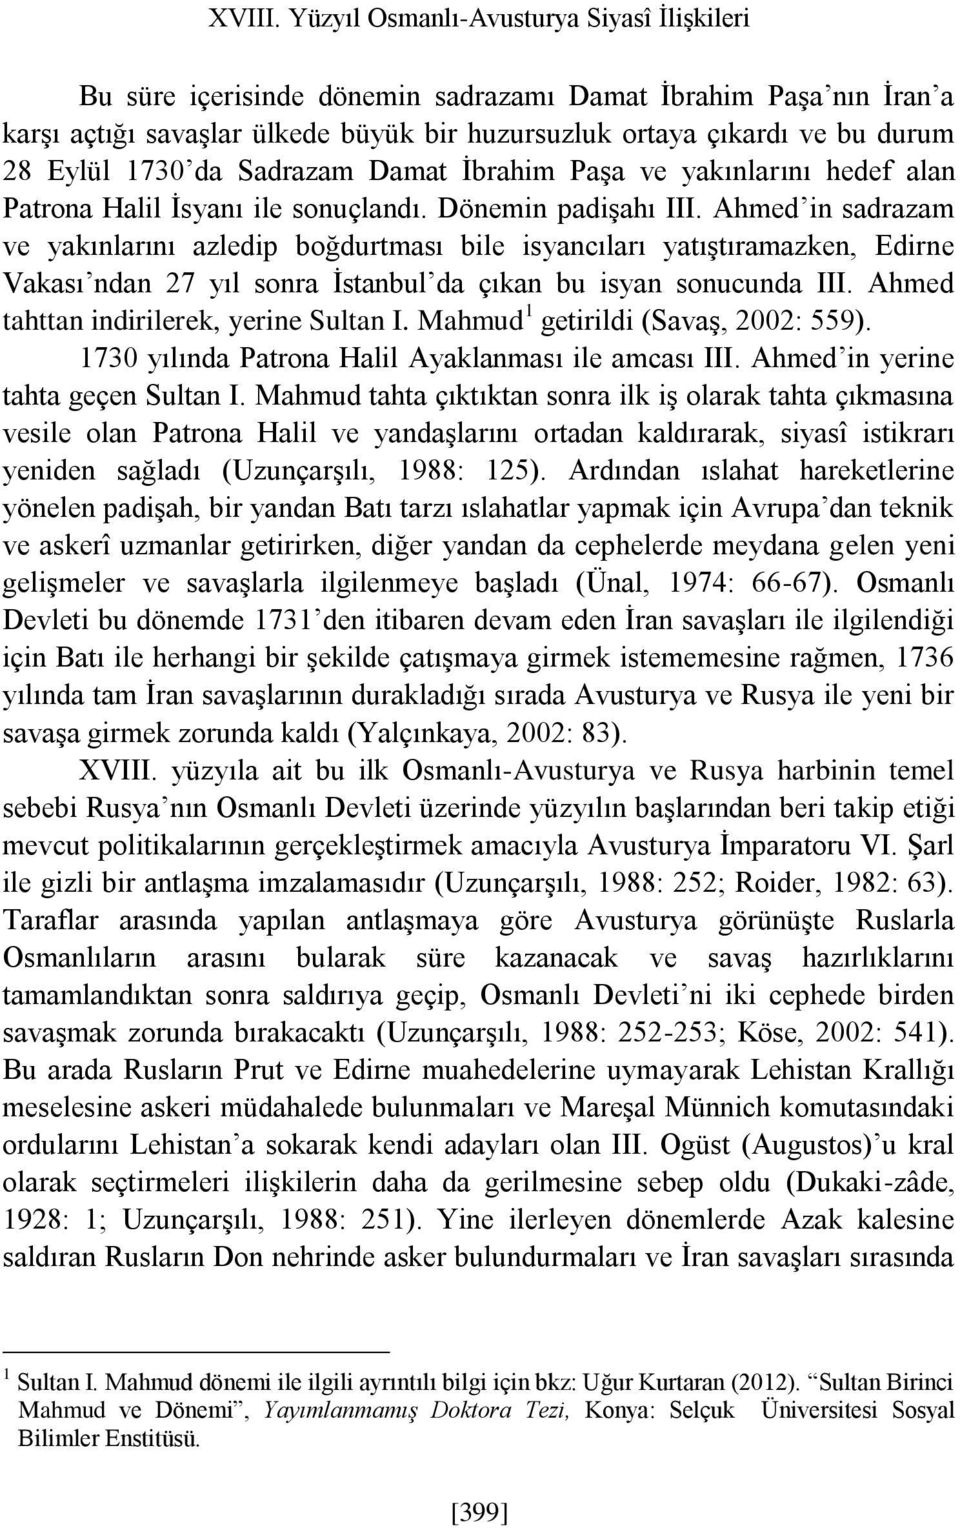 1730 da Sadrazam Damat İbrahim Paşa ve yakınlarını hedef alan Patrona Halil İsyanı ile sonuçlandı. Dönemin padişahı III.